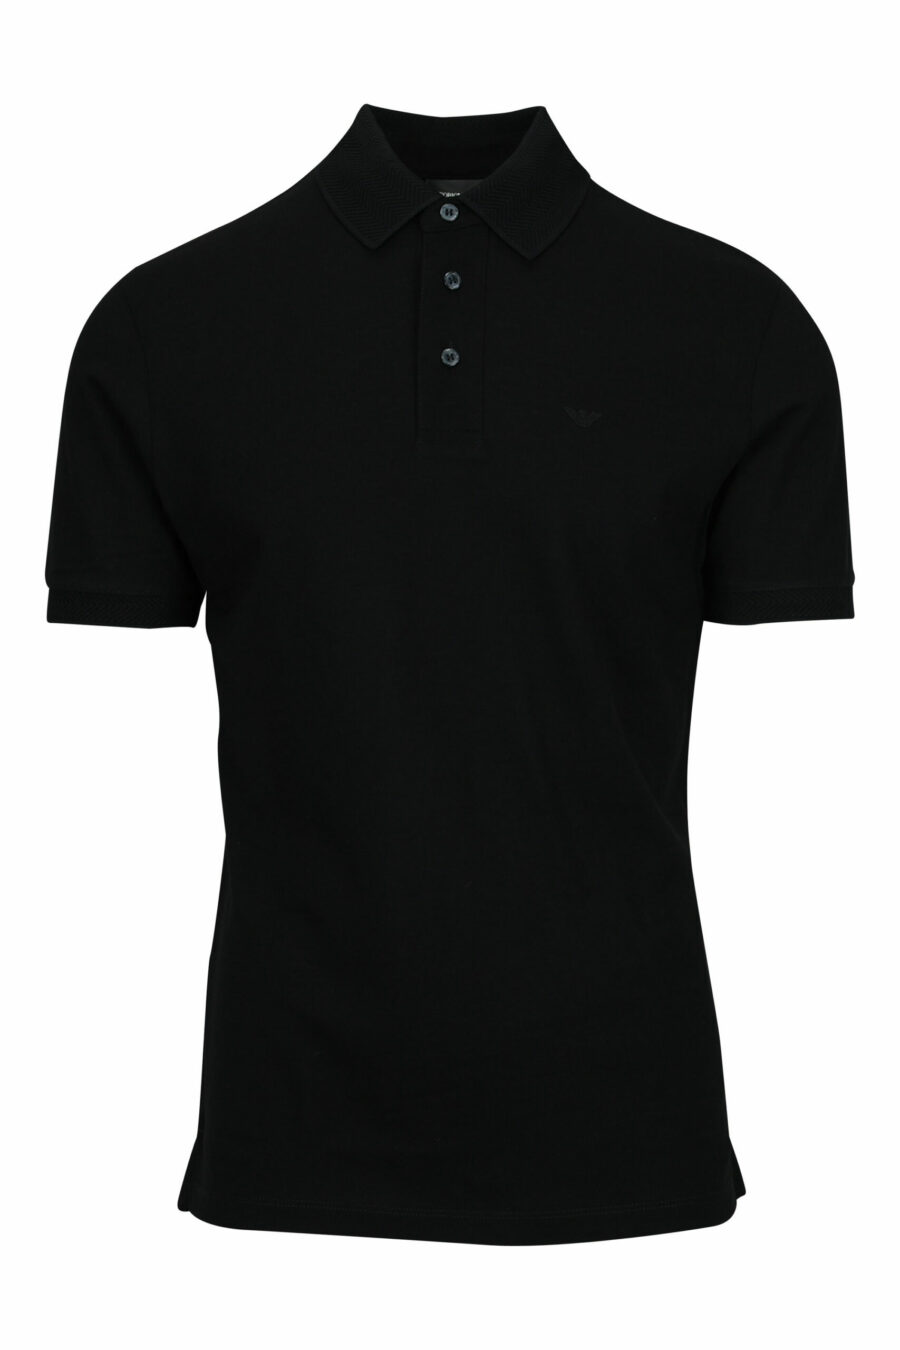 Black polo shirt with eagle mini logo - 8057970491989 scaled